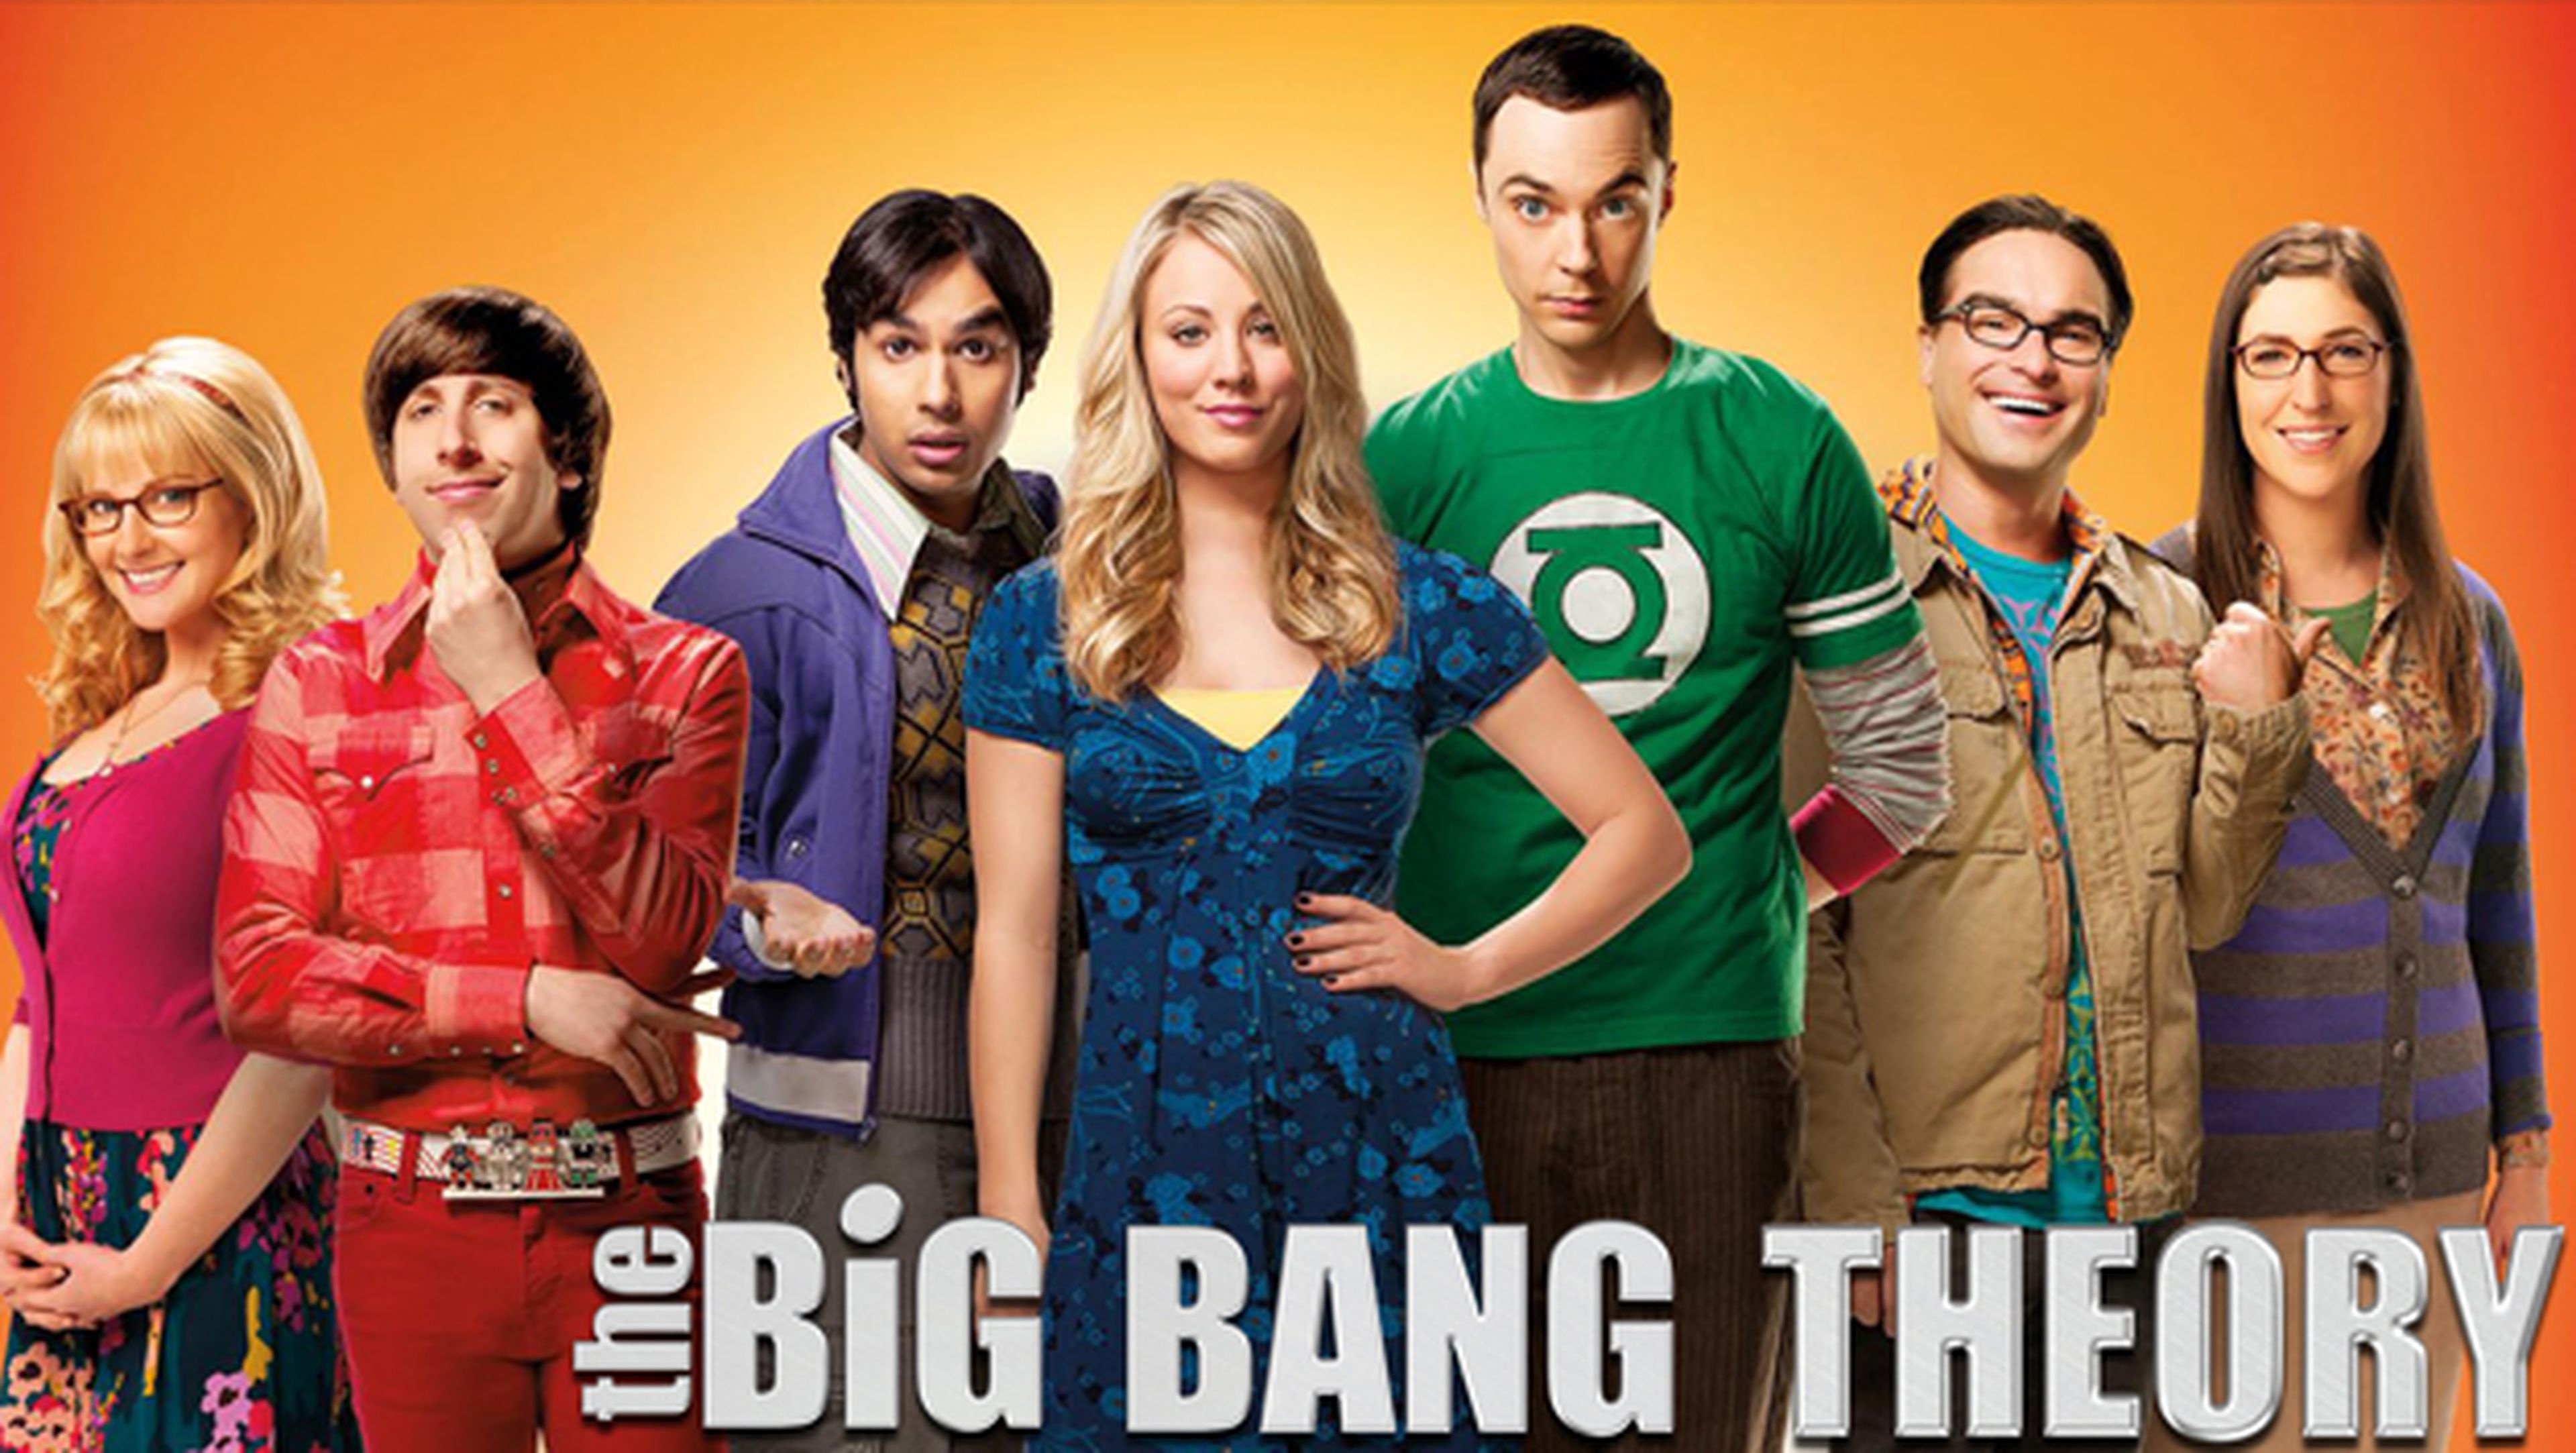 The Big Bang Theory, censurado en China